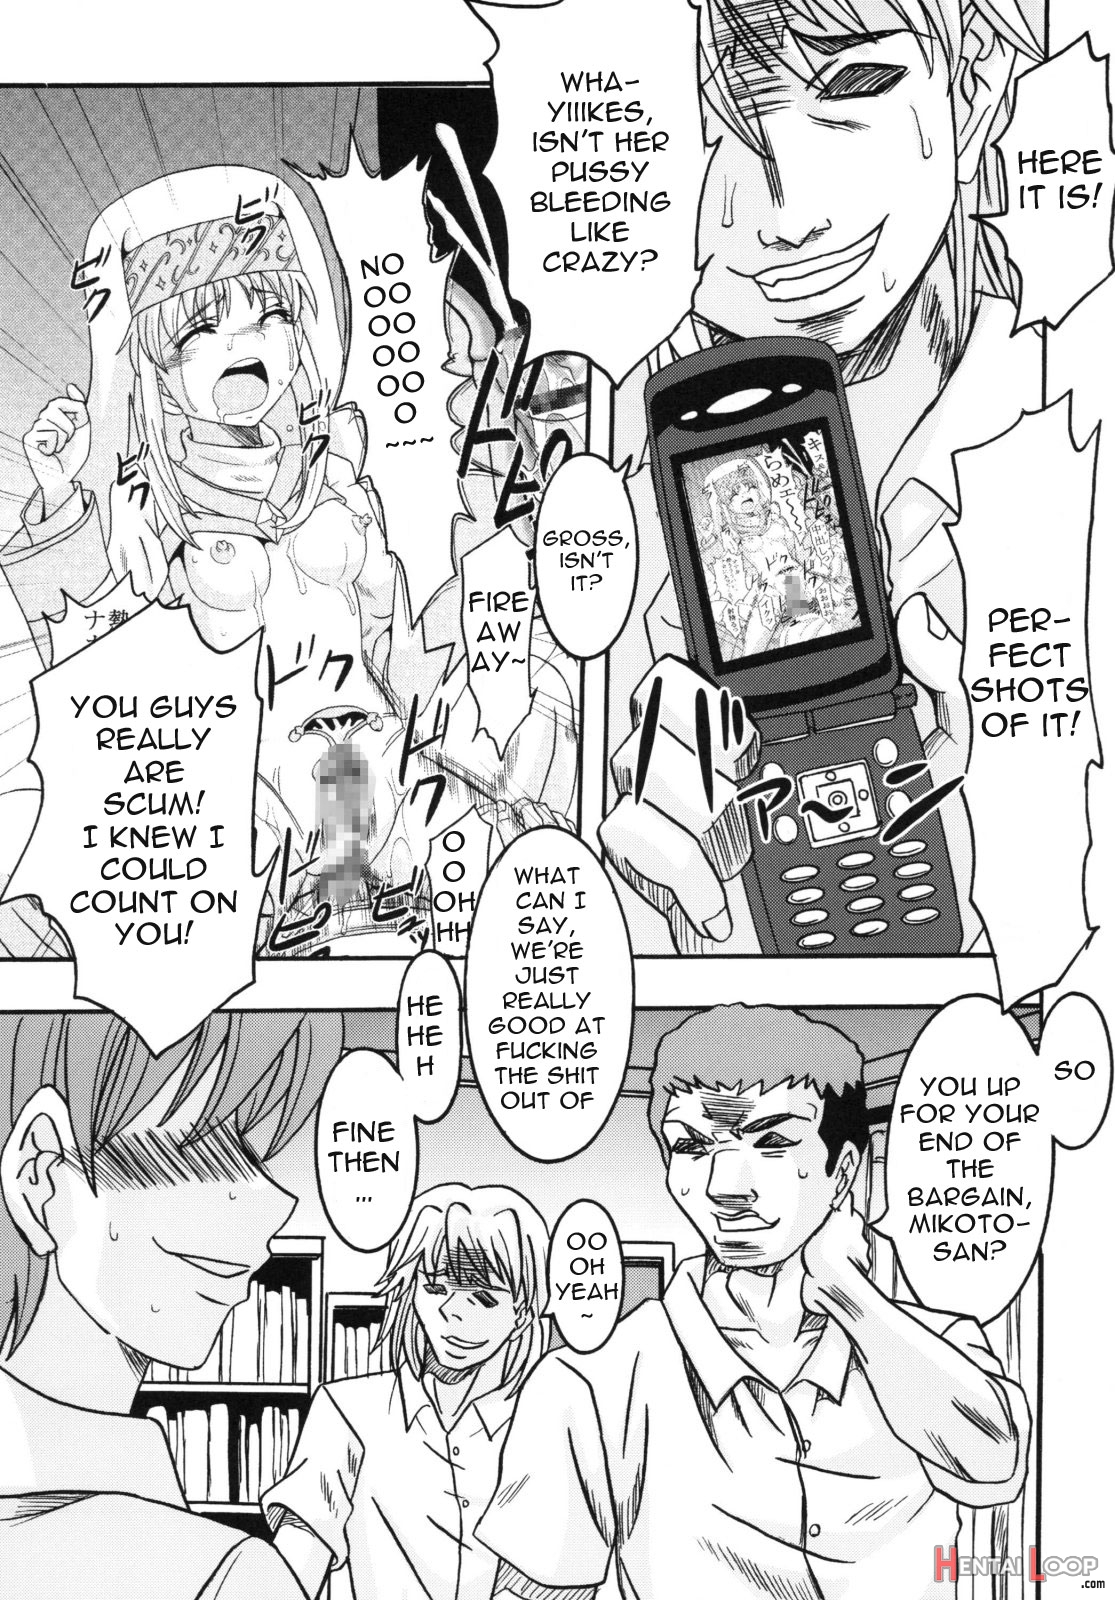 Toaru Otaku No Index #2 page 10